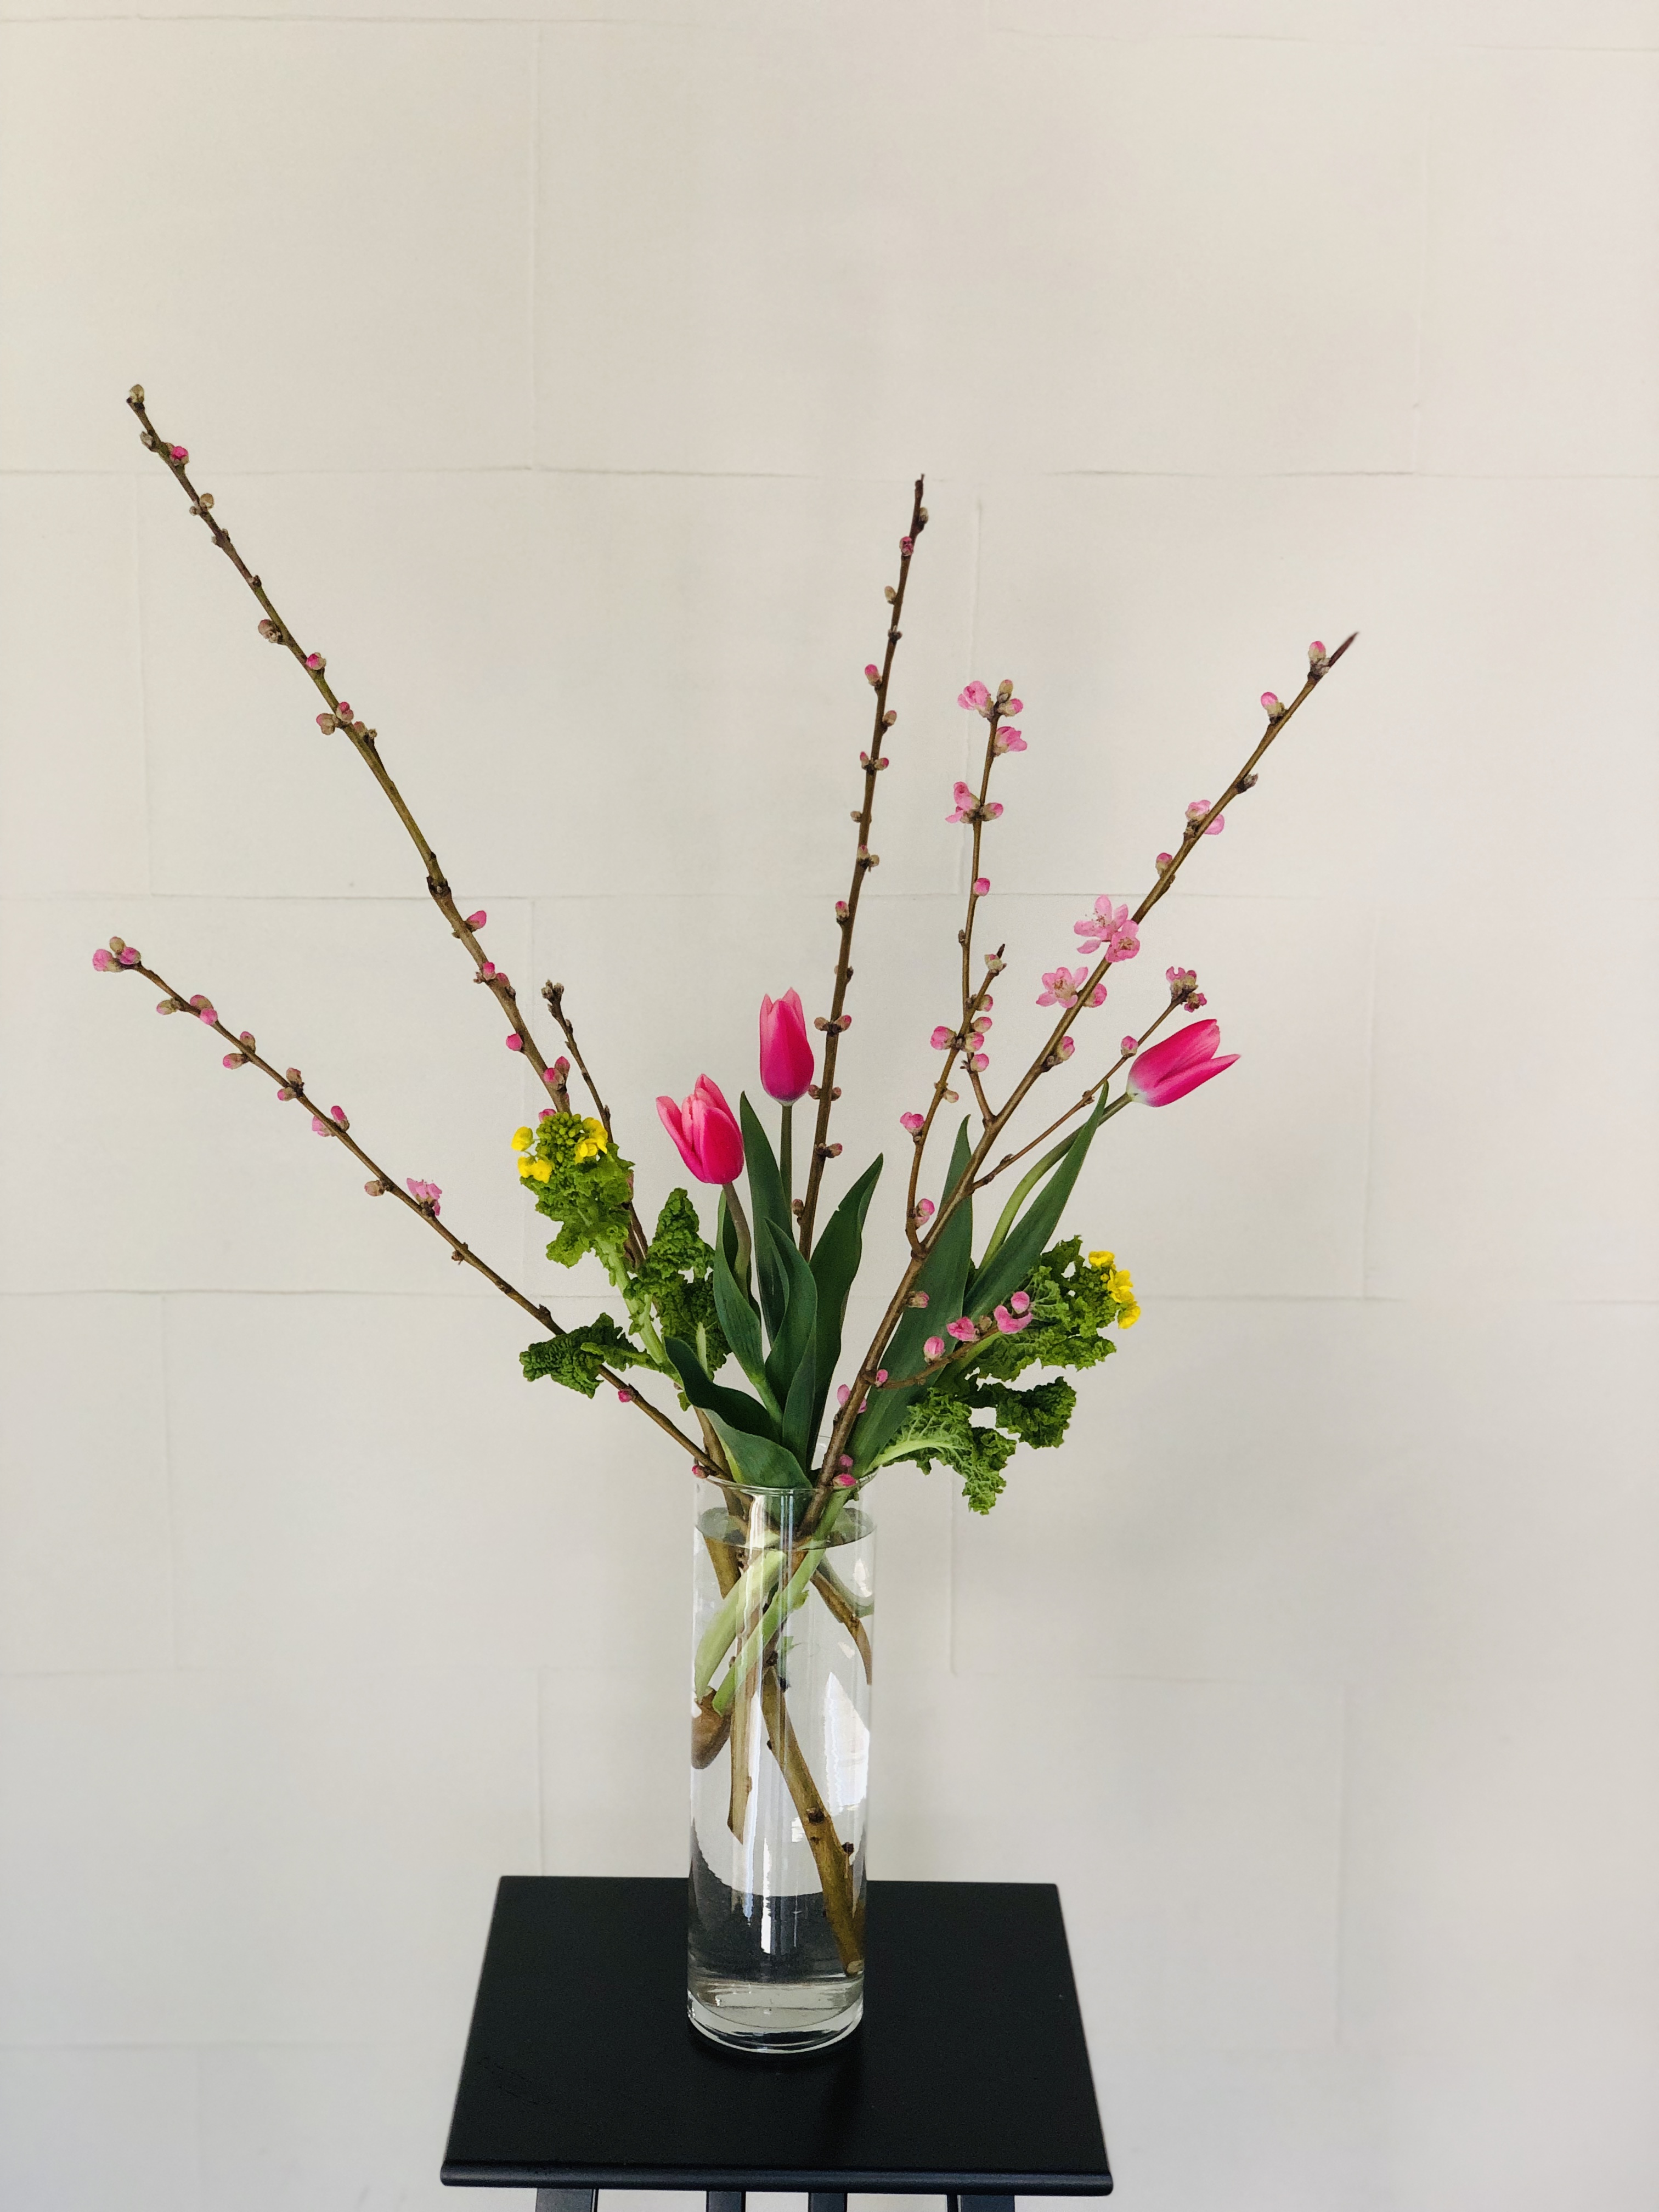 ひな祭りには桃の花 飾り方を提案します お花選びのコンシェルジュ